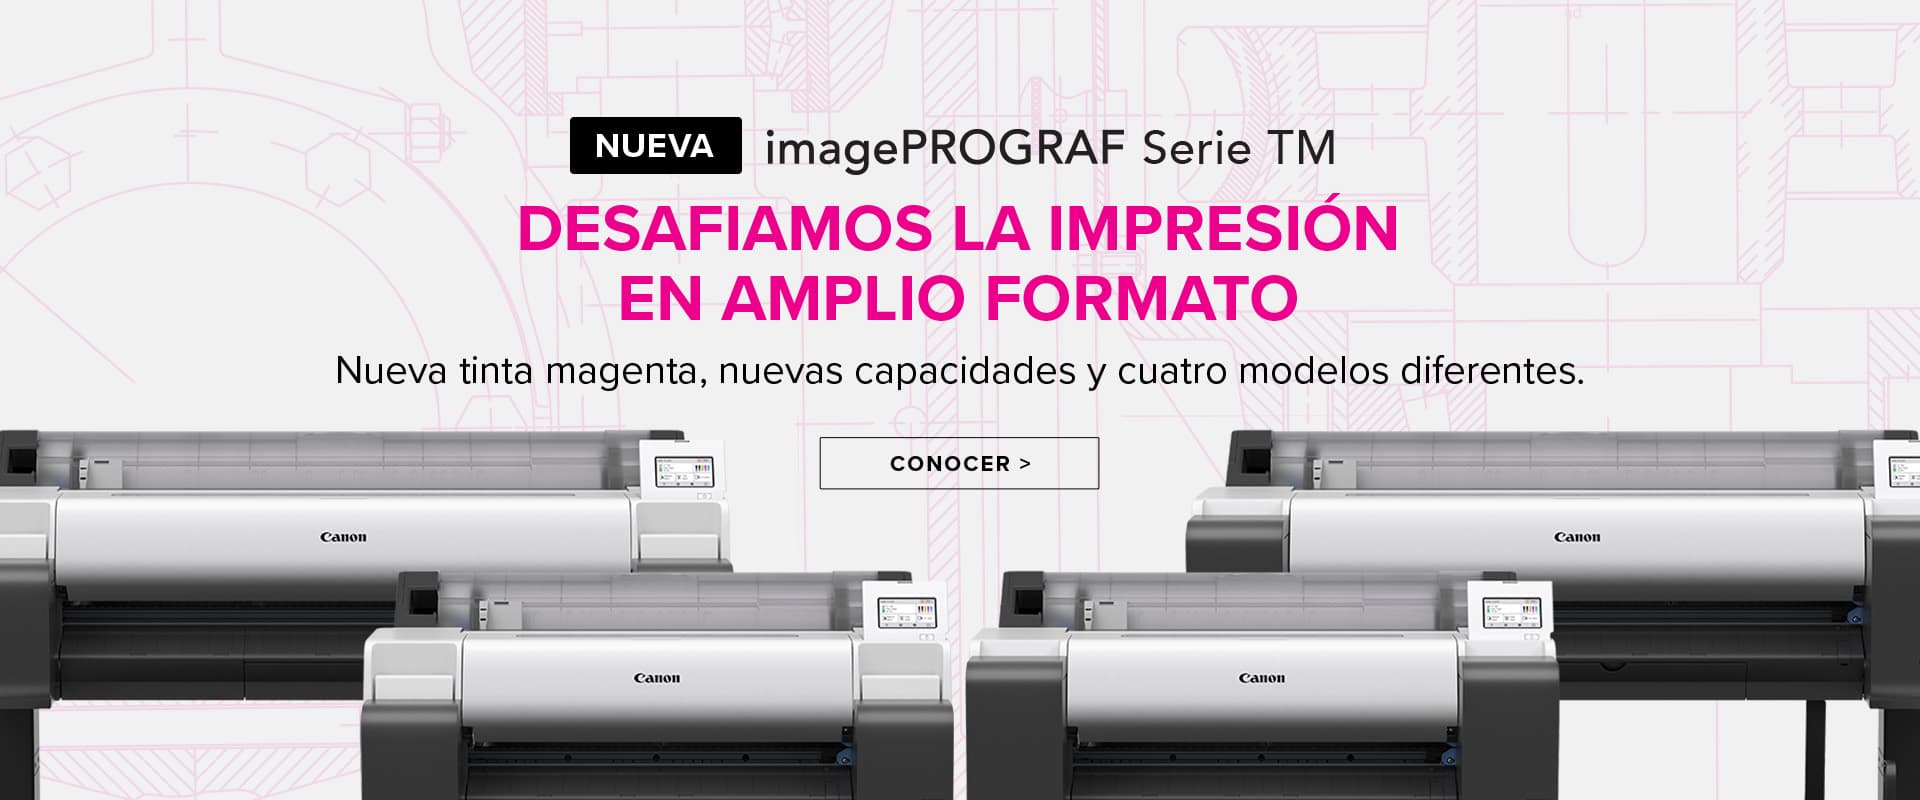 Nueva imagePROGRAF Serie TM - Desafiamos la Impresión en Amplio Formato